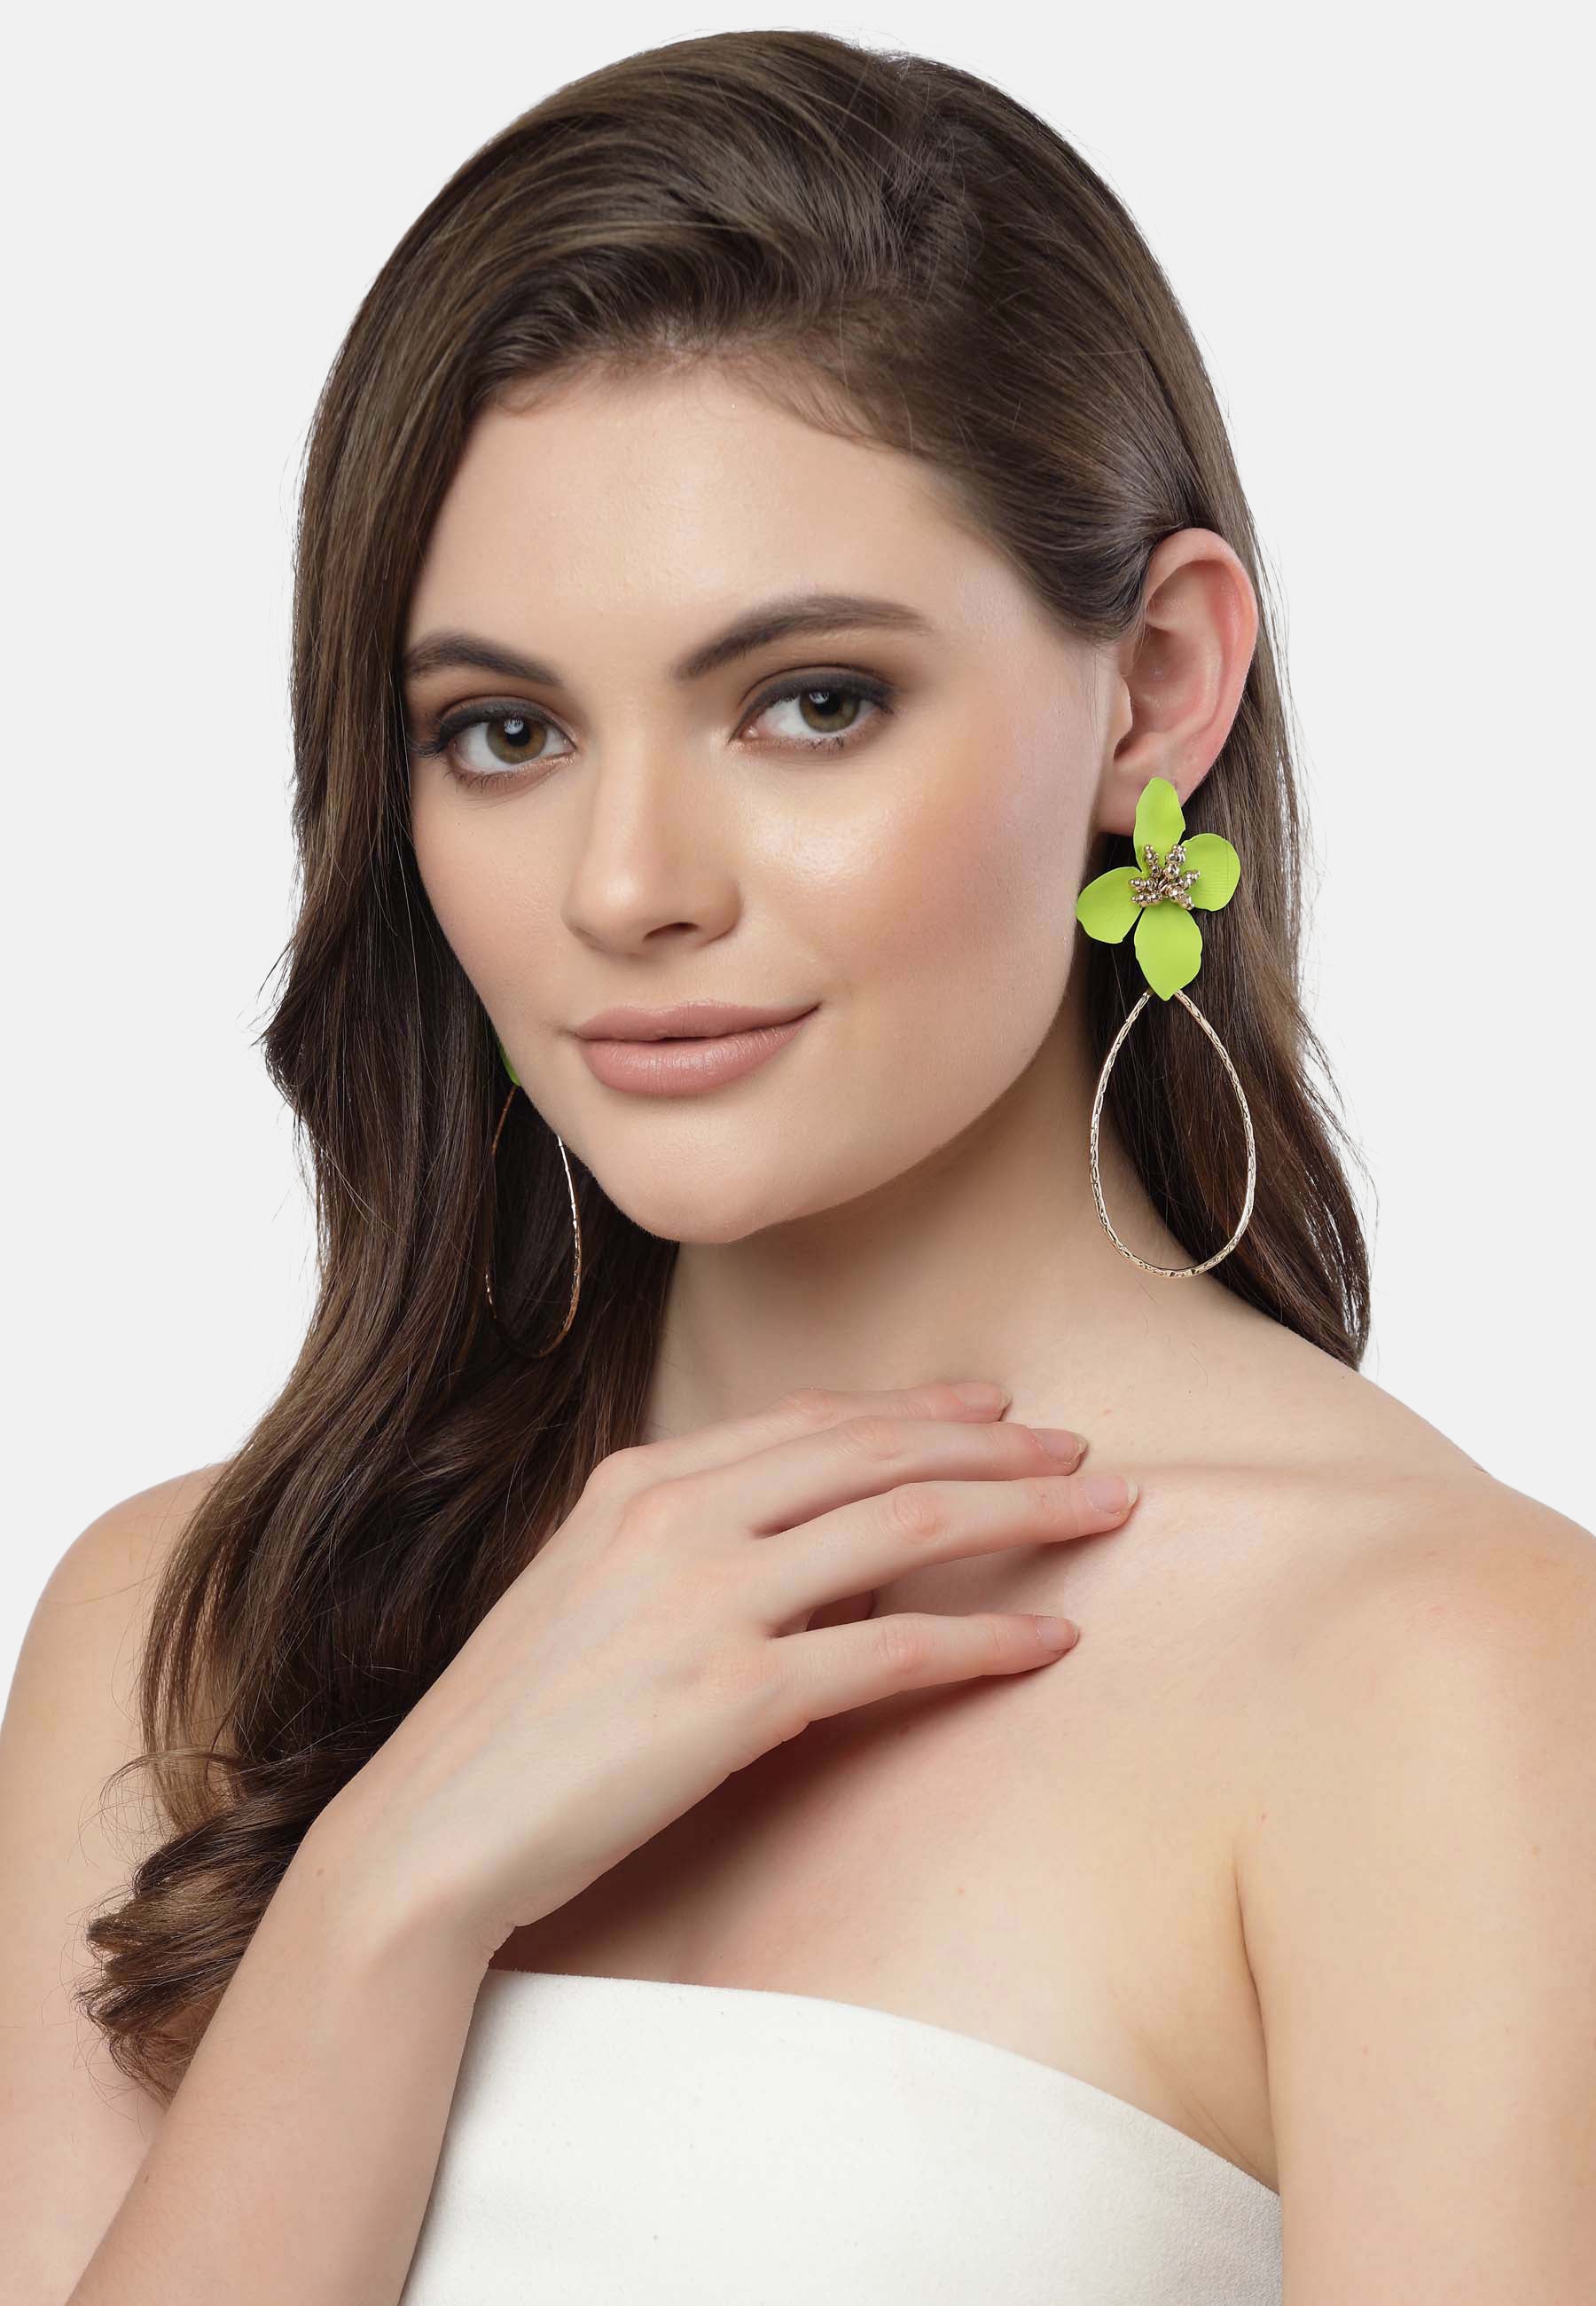 Boucles d'oreilles fleur de prunier en vert